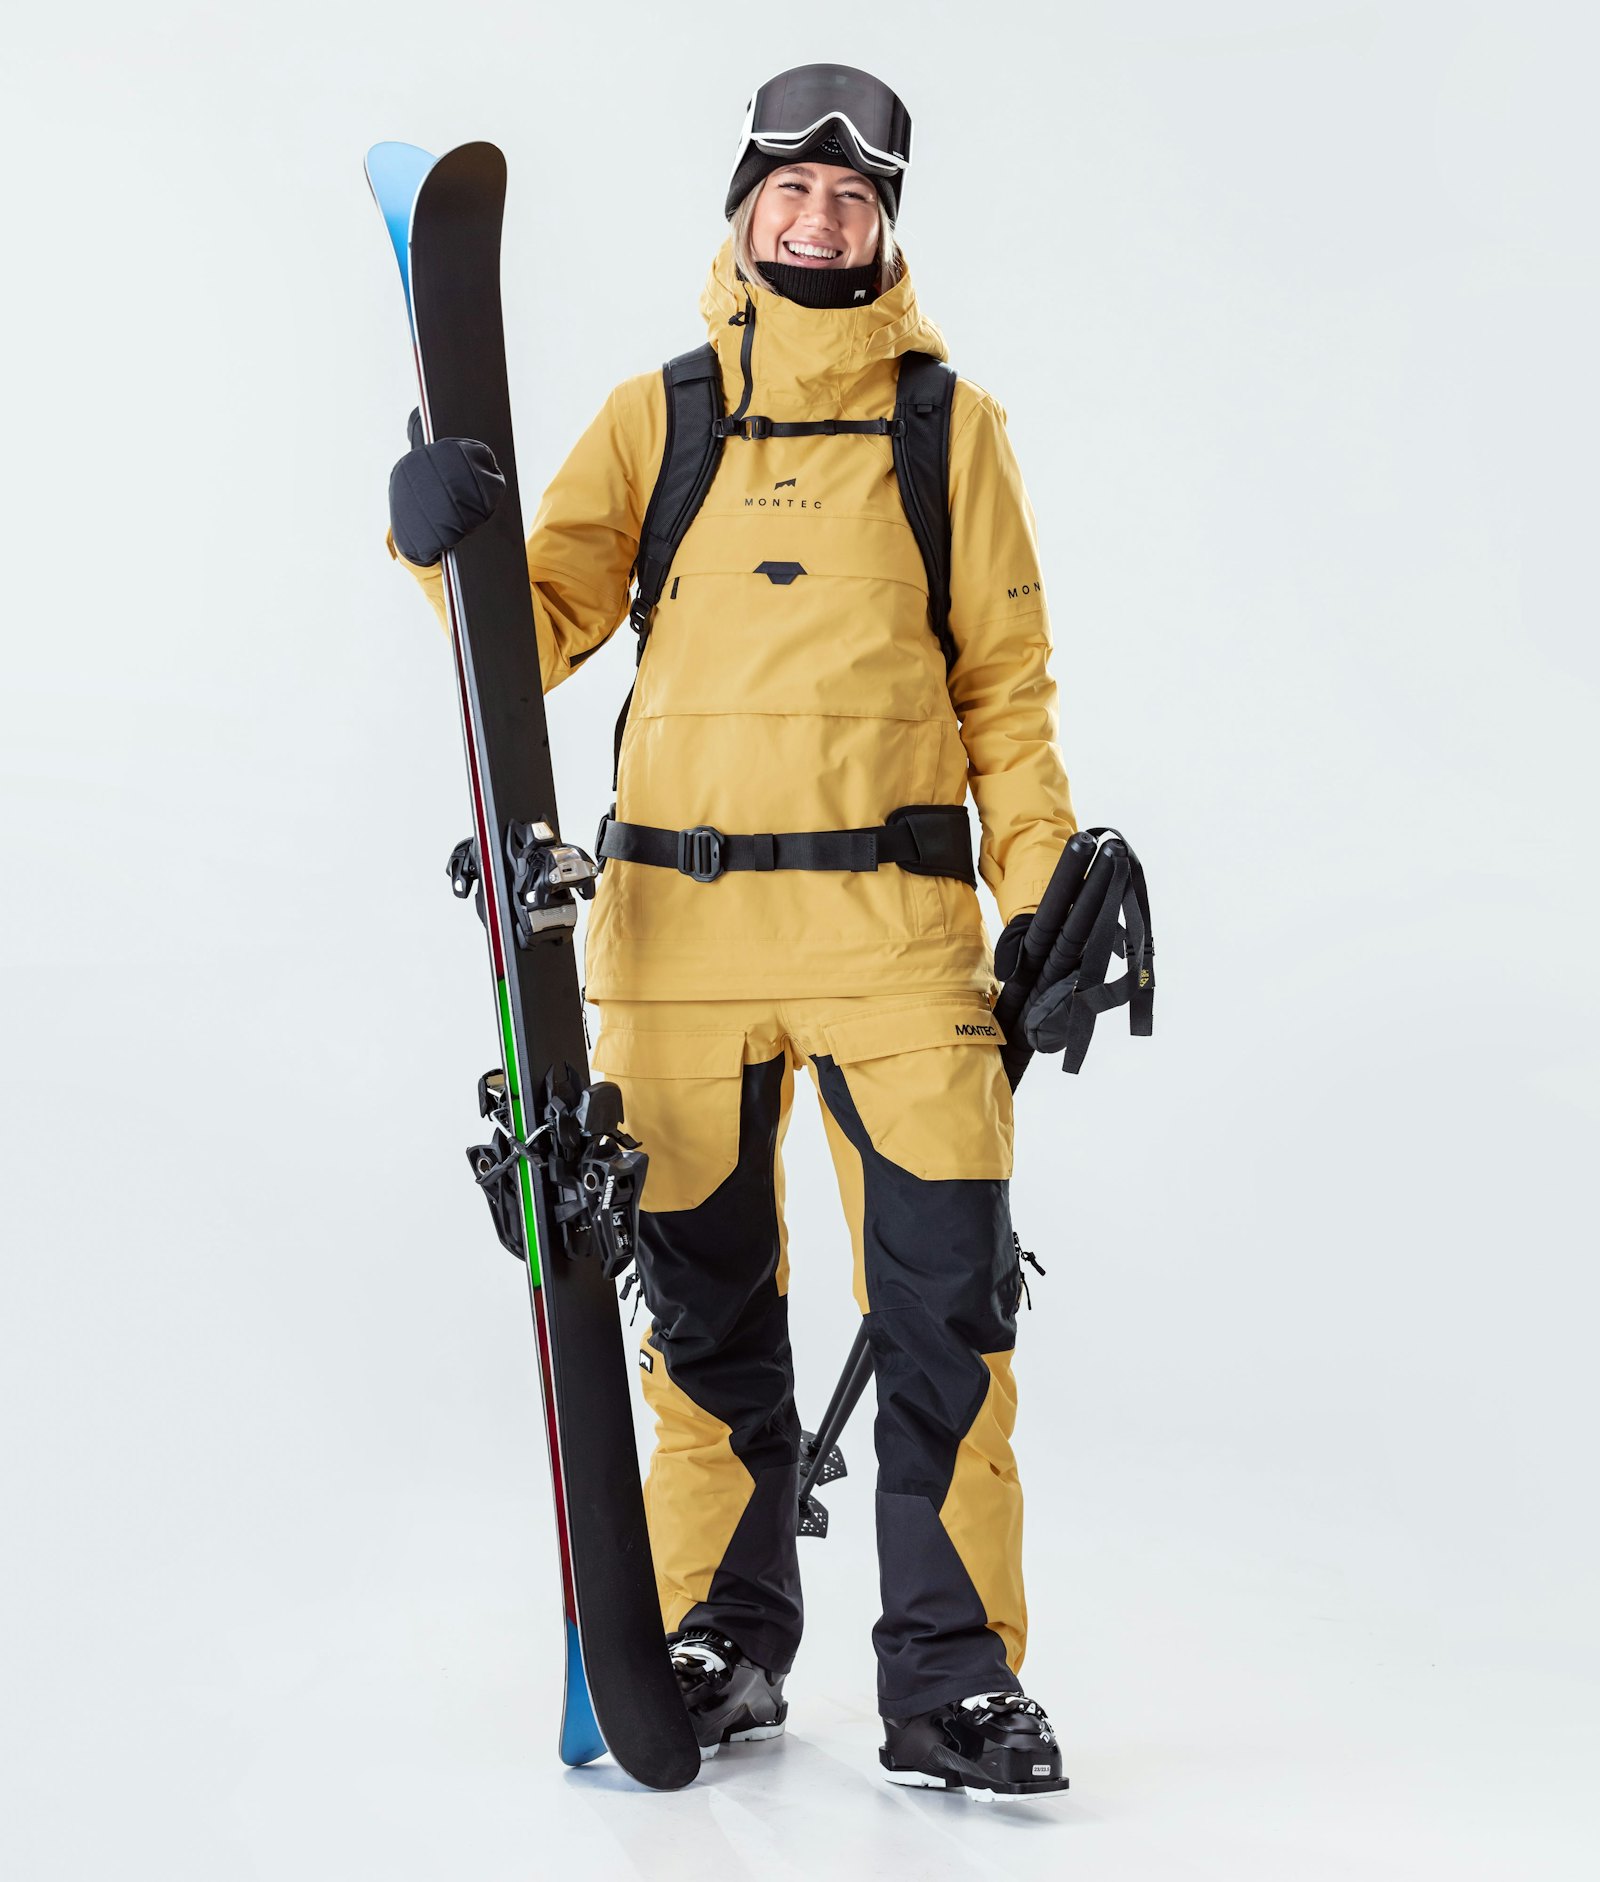 Dune W 2020 スキージャケット レディース Yellow